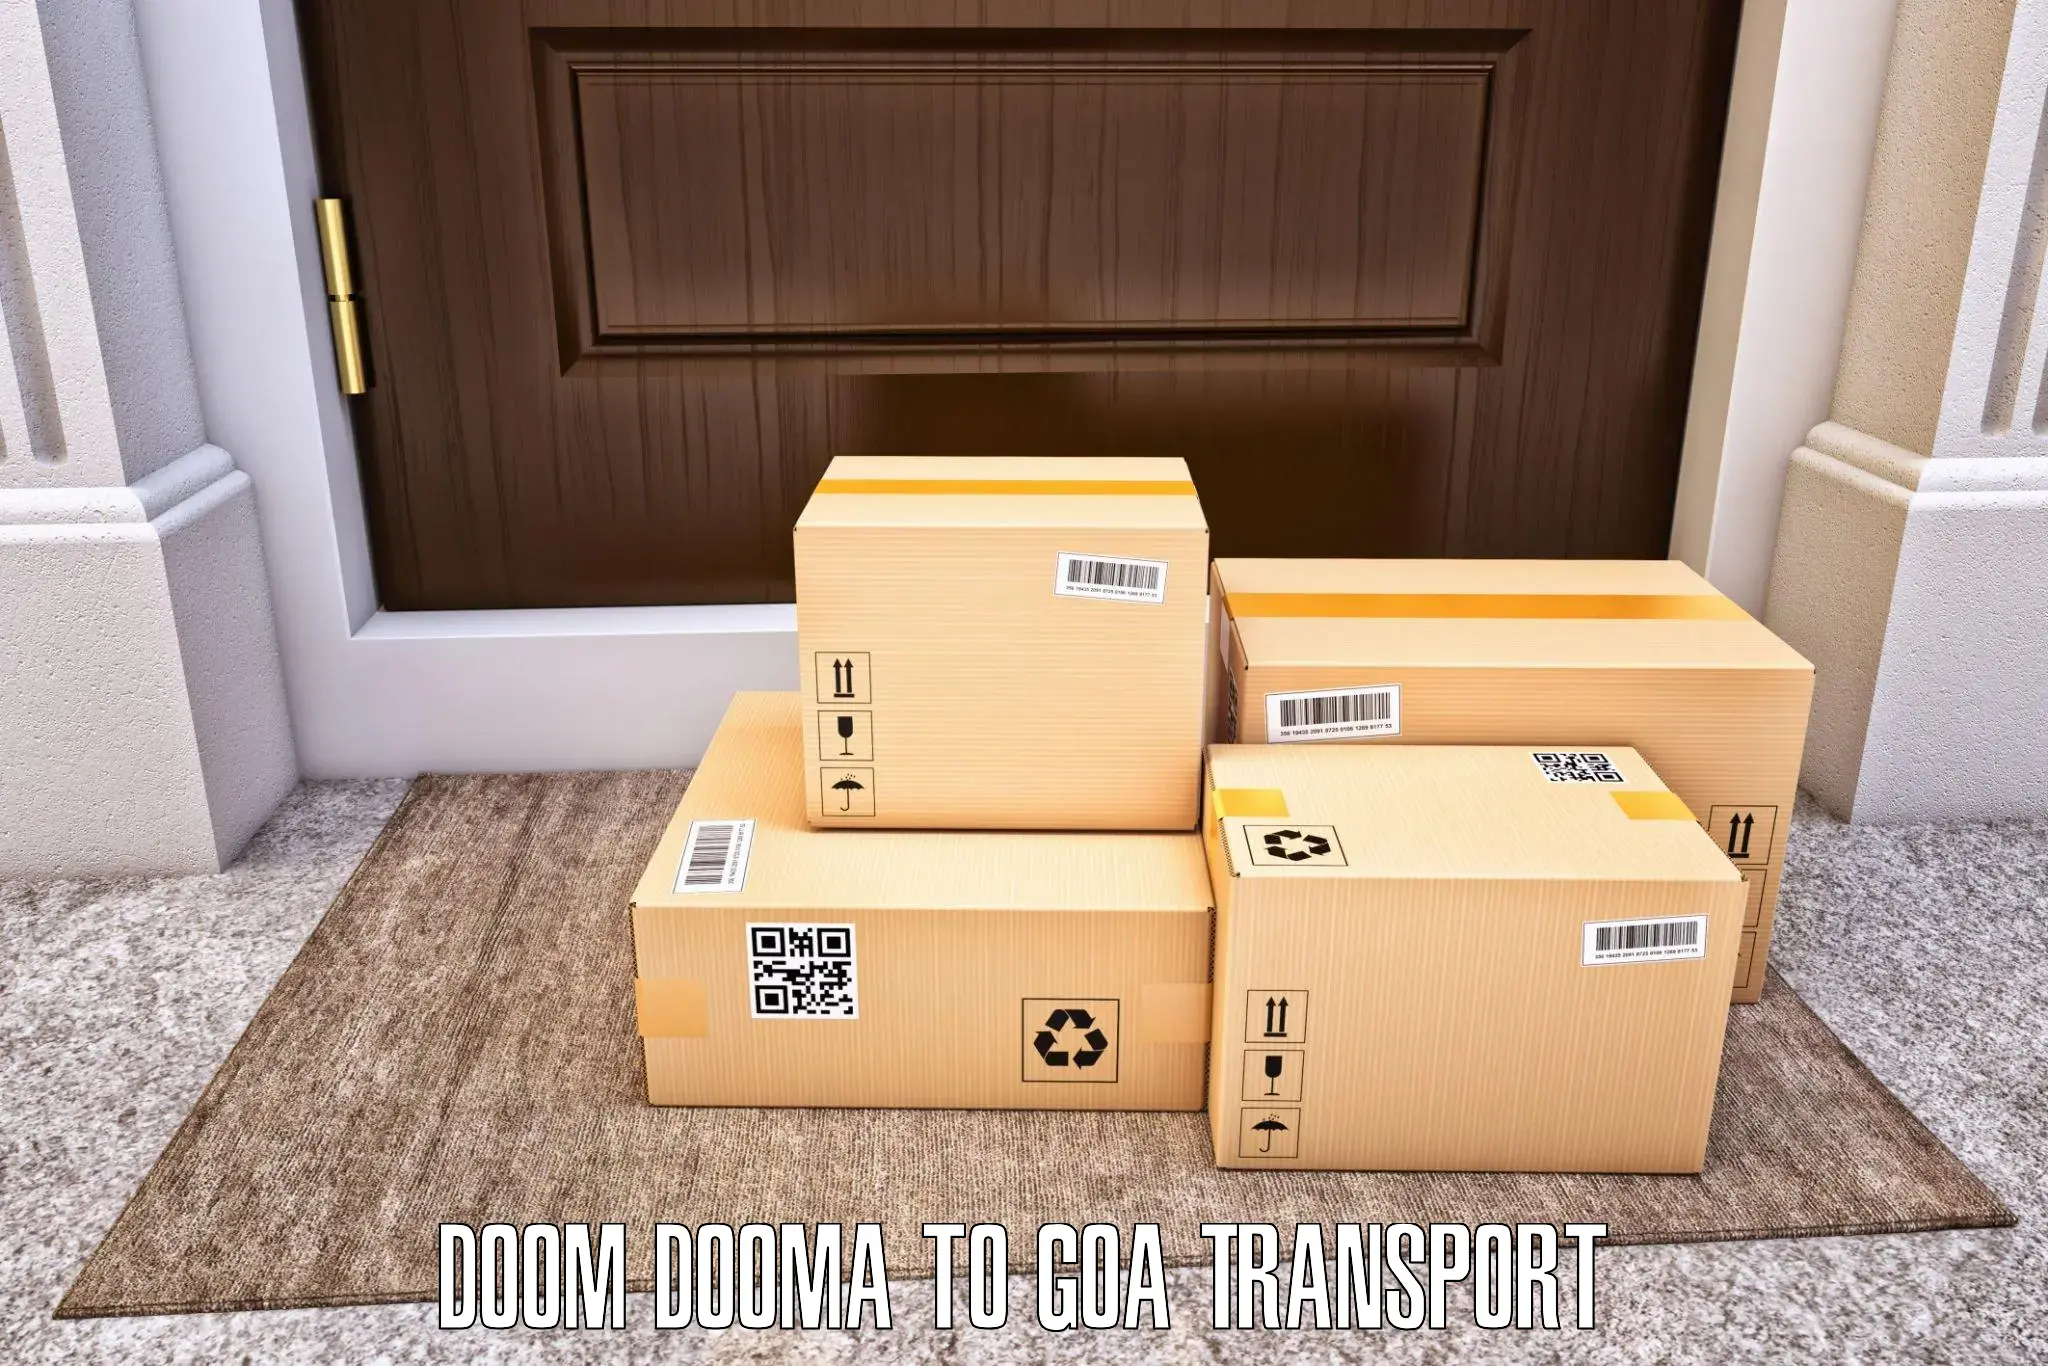 Transportation services Doom Dooma to Margao